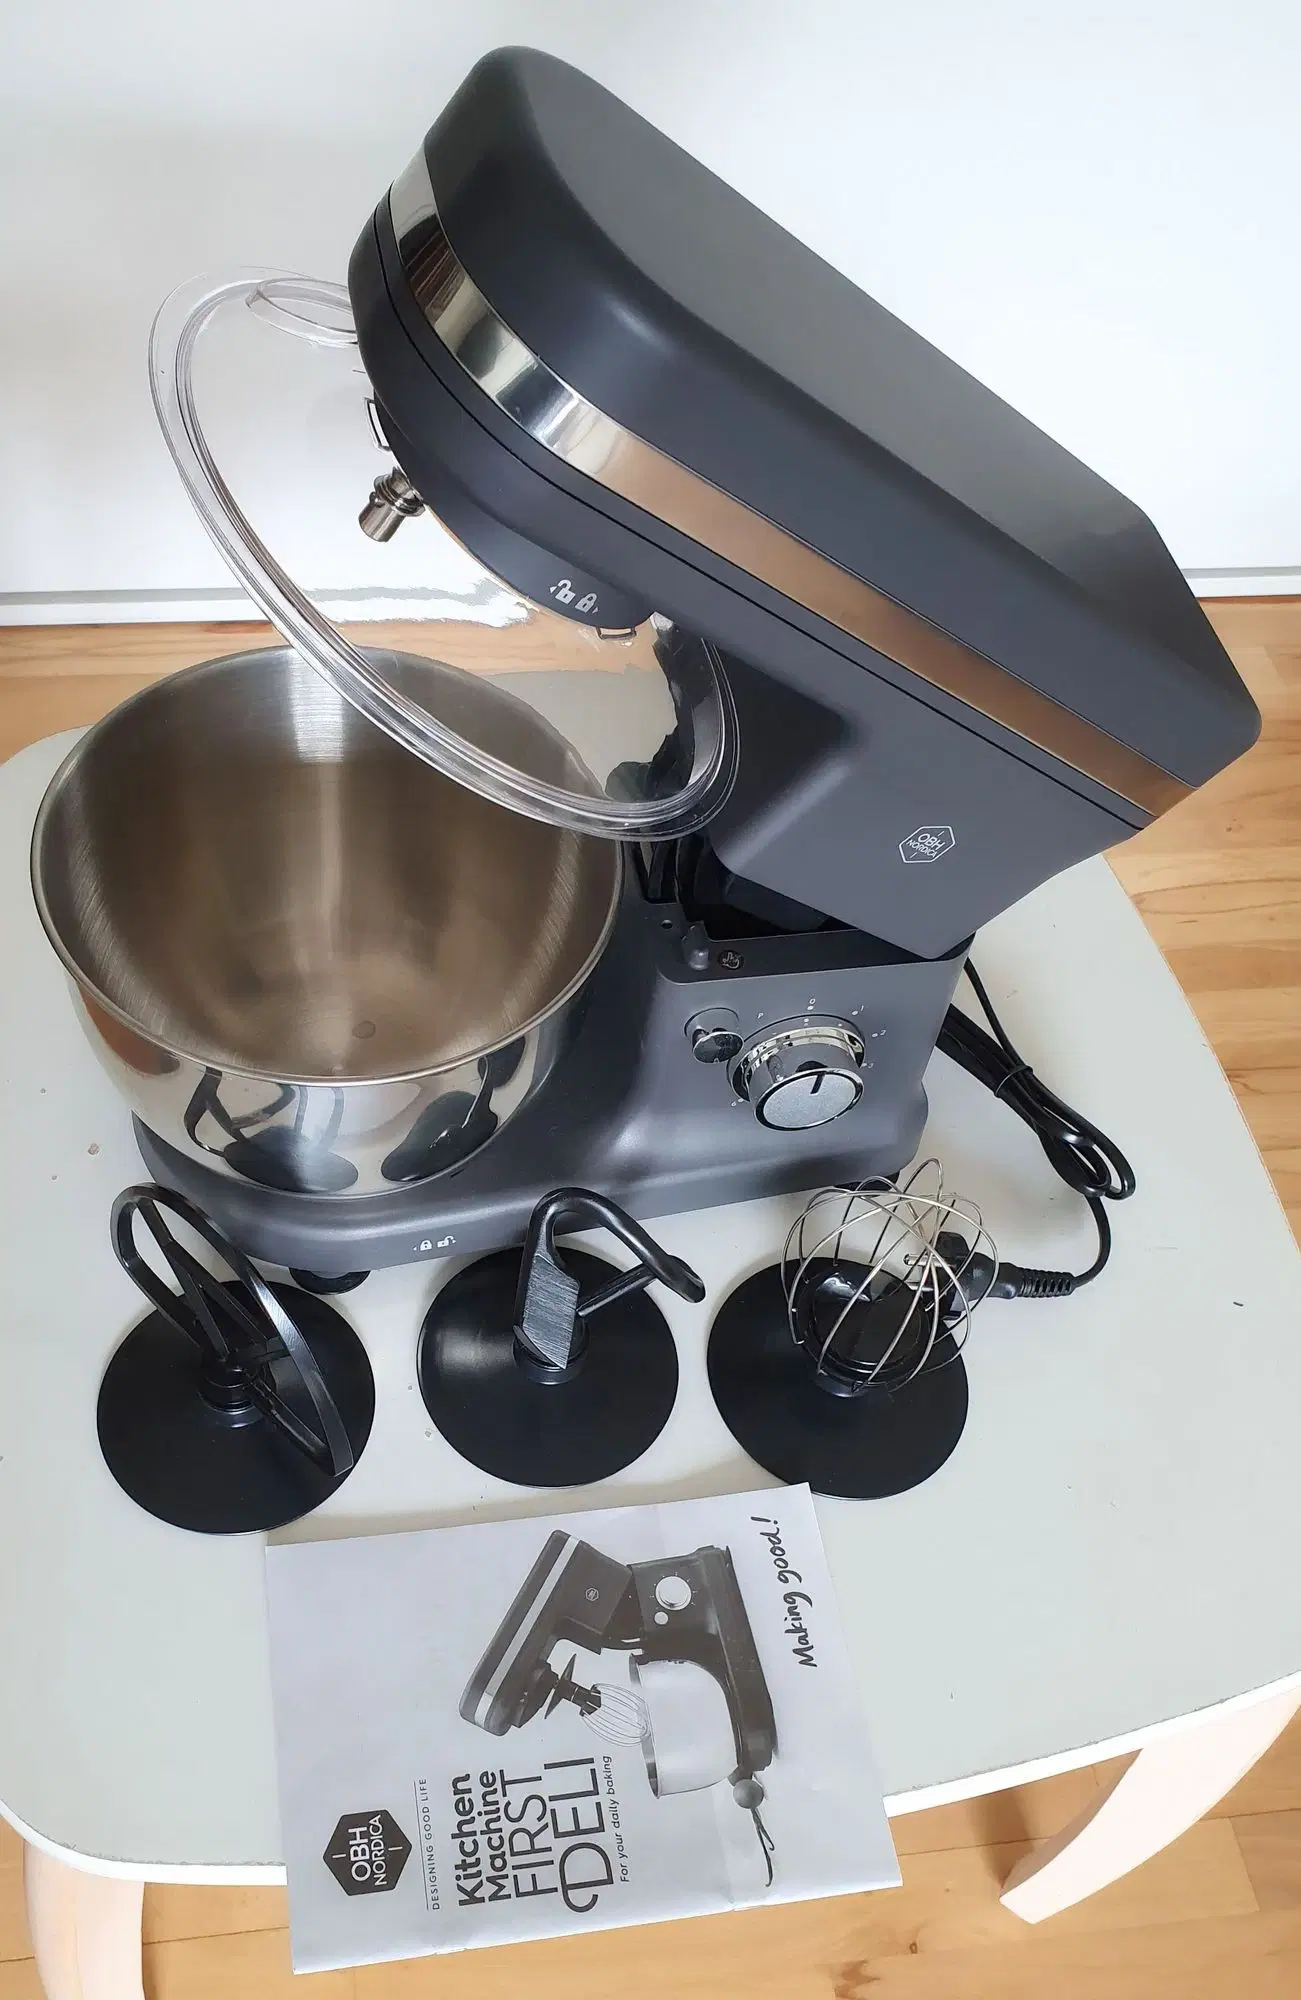 OBH Nordica First Deli køkkenmaskine